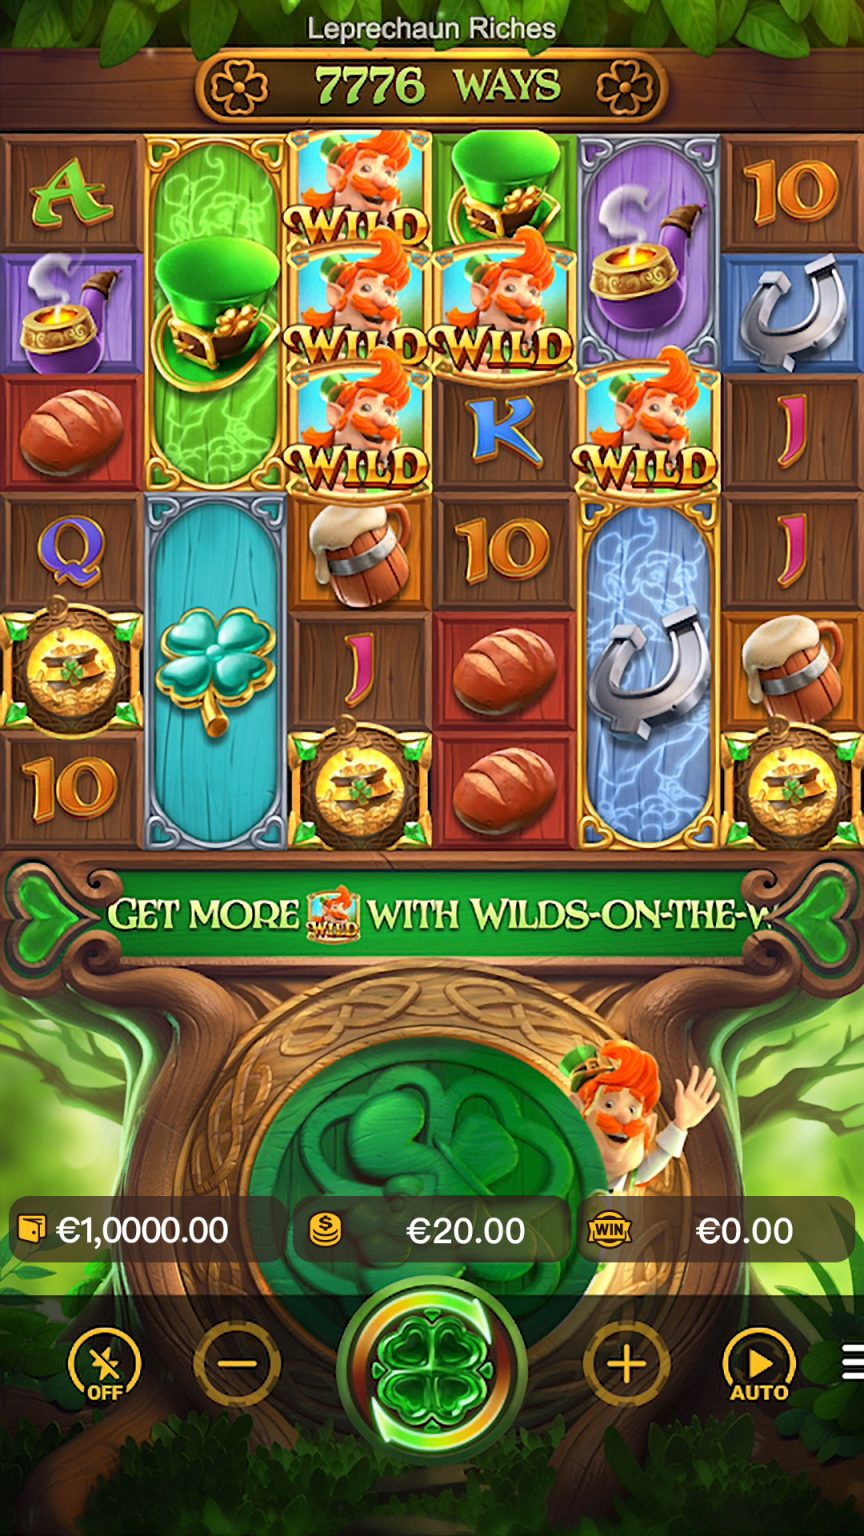 слот leprechaun riches демо играть онлайн бесплатно